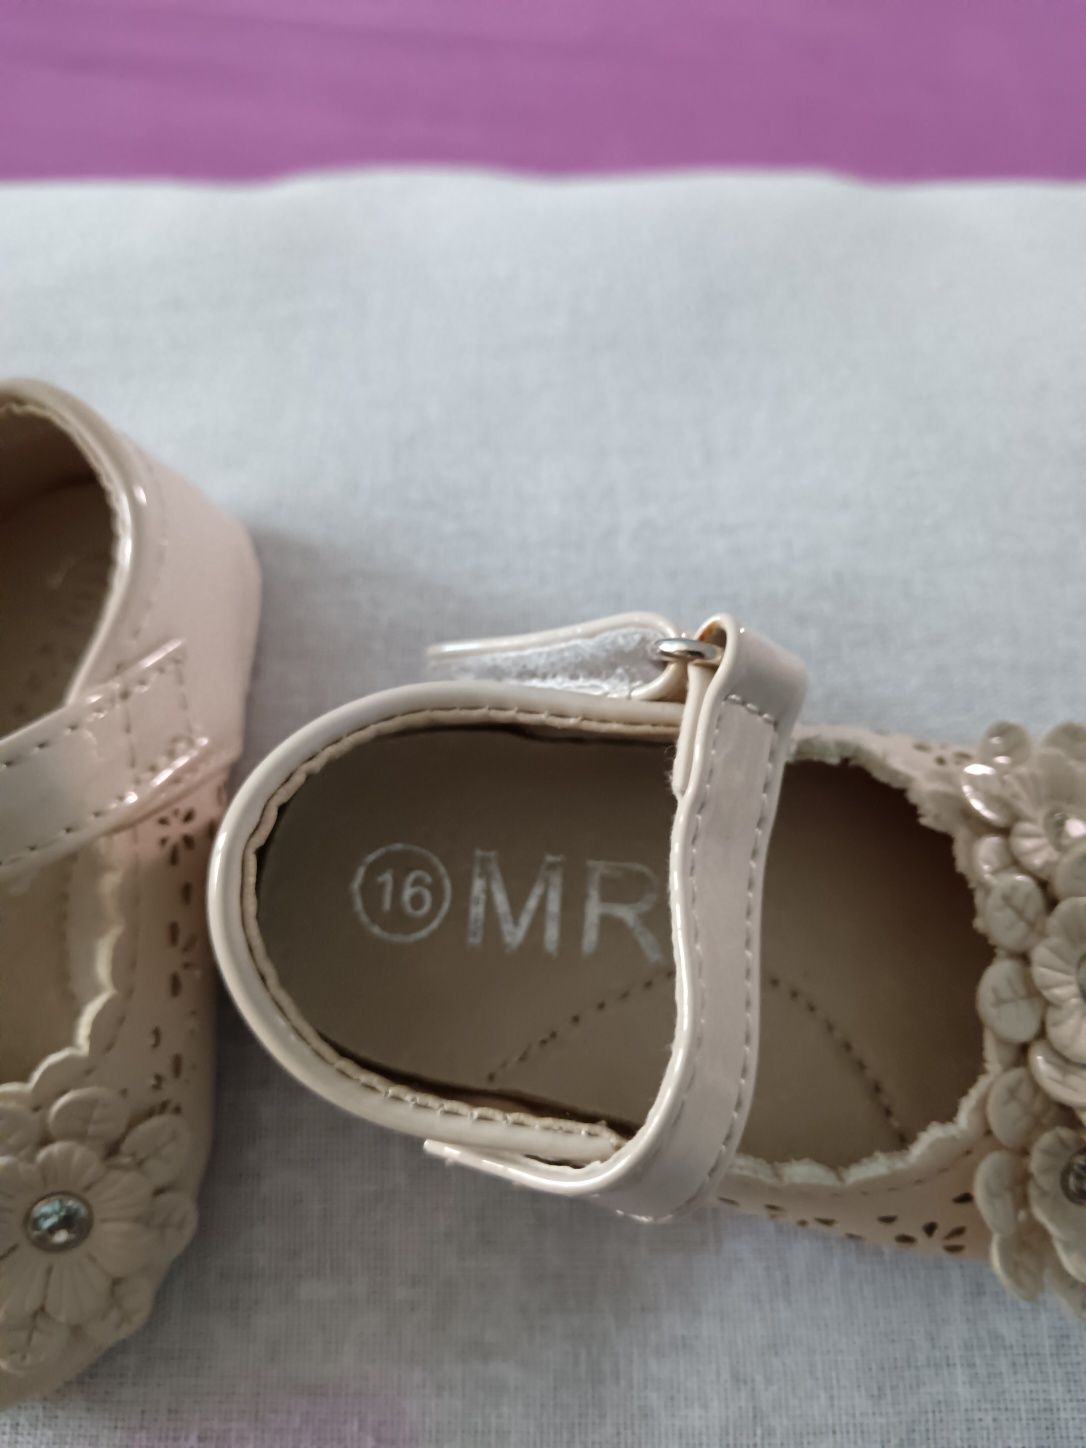 Vând Pantofiori Fetiță cu Strasuri Noi Mărimea 16 Italia